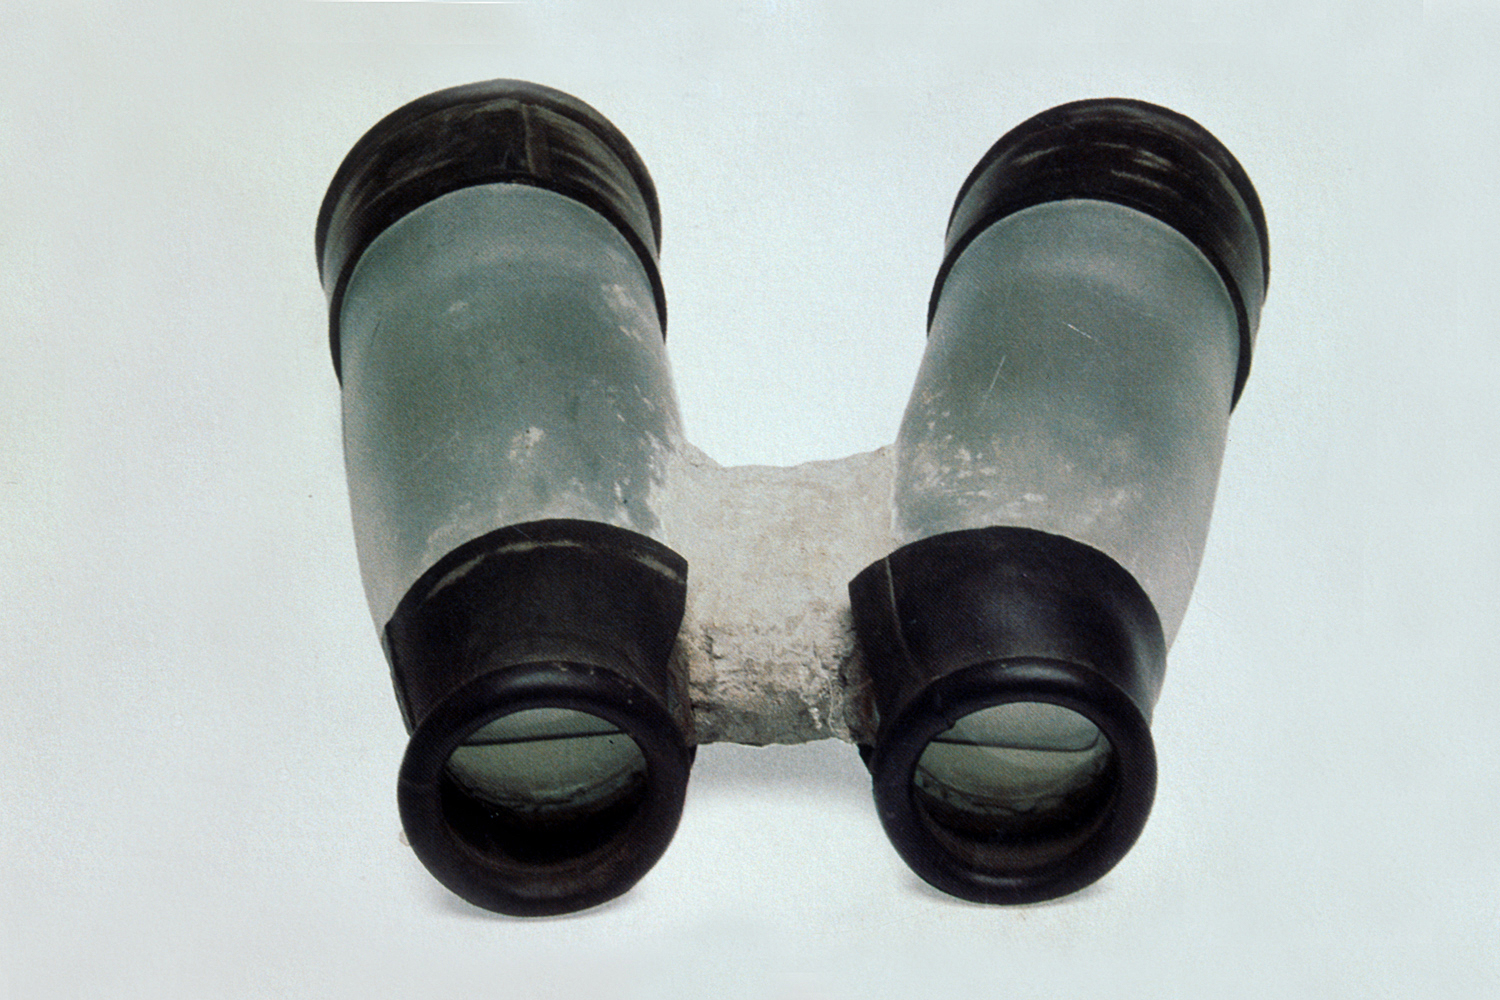 oostende-water-binoculars-huebner-1.jpg